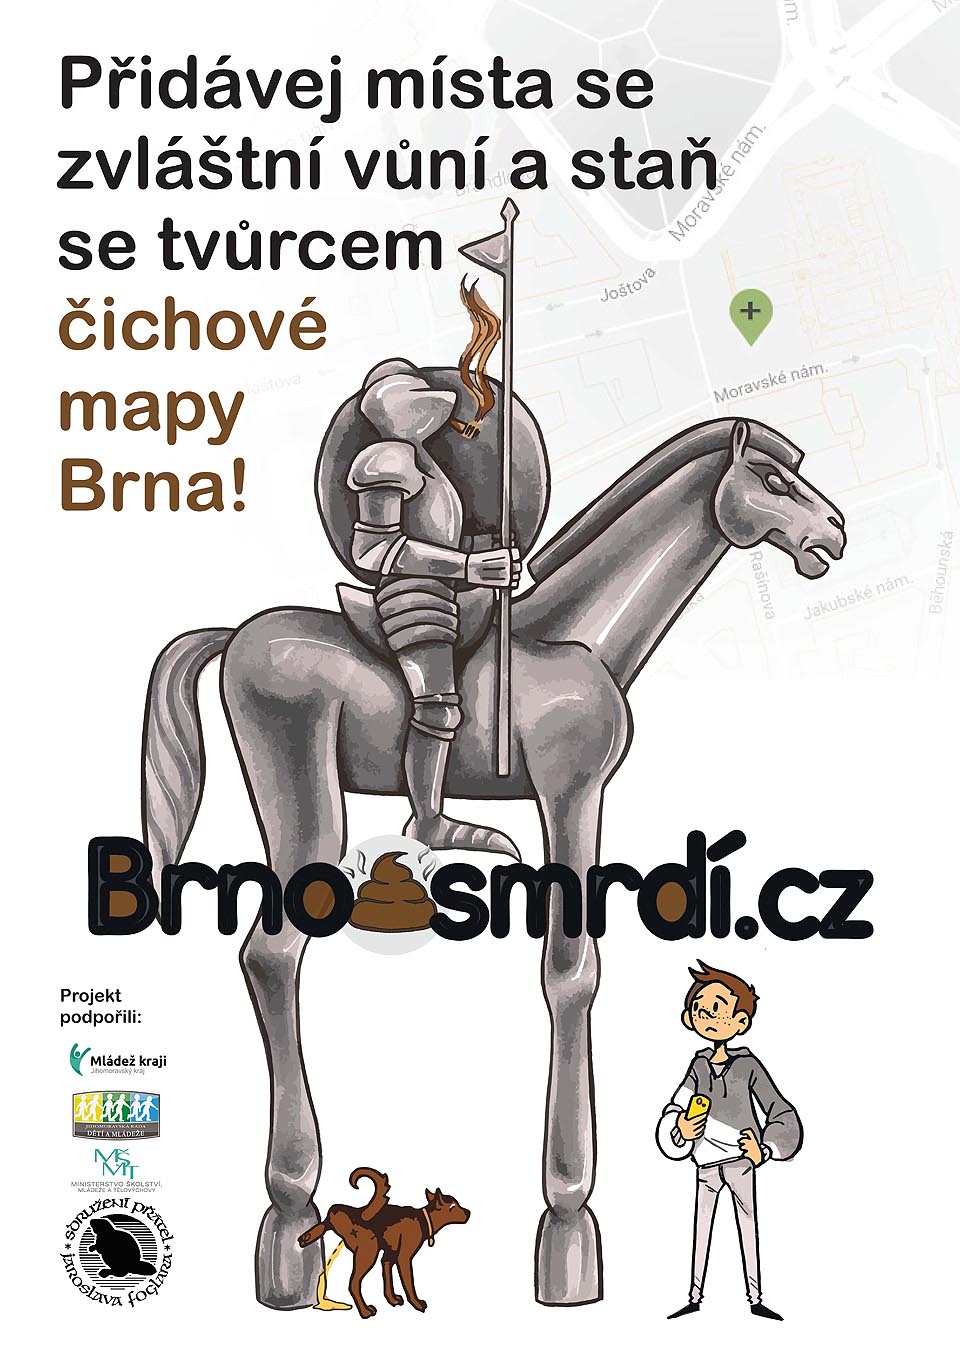 Druhý plakát Čichové mapy Brna.